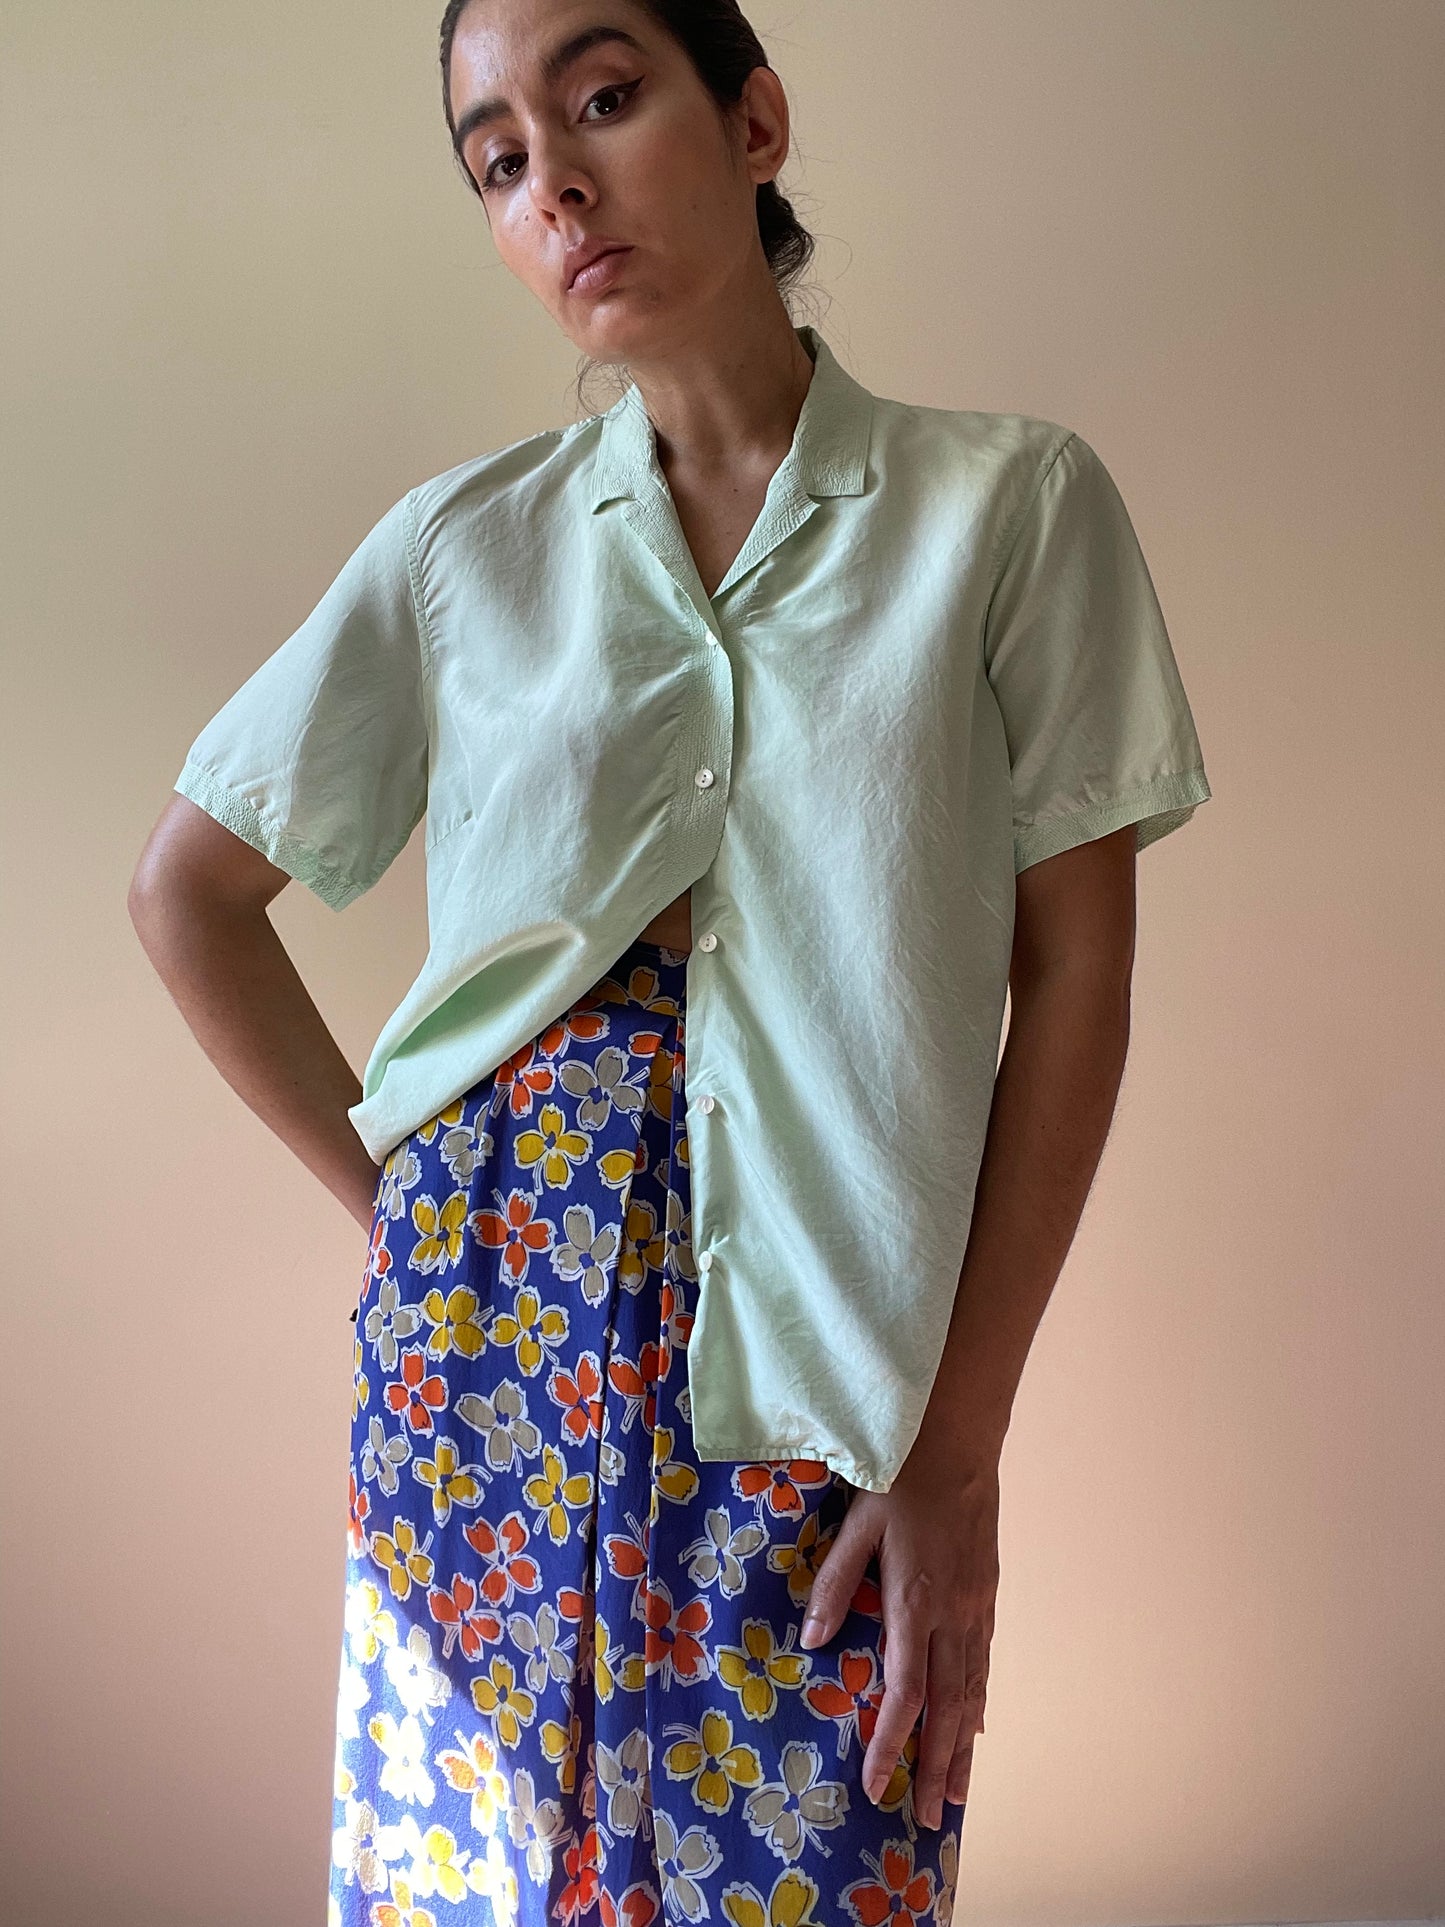 Vintage Floral Skirt